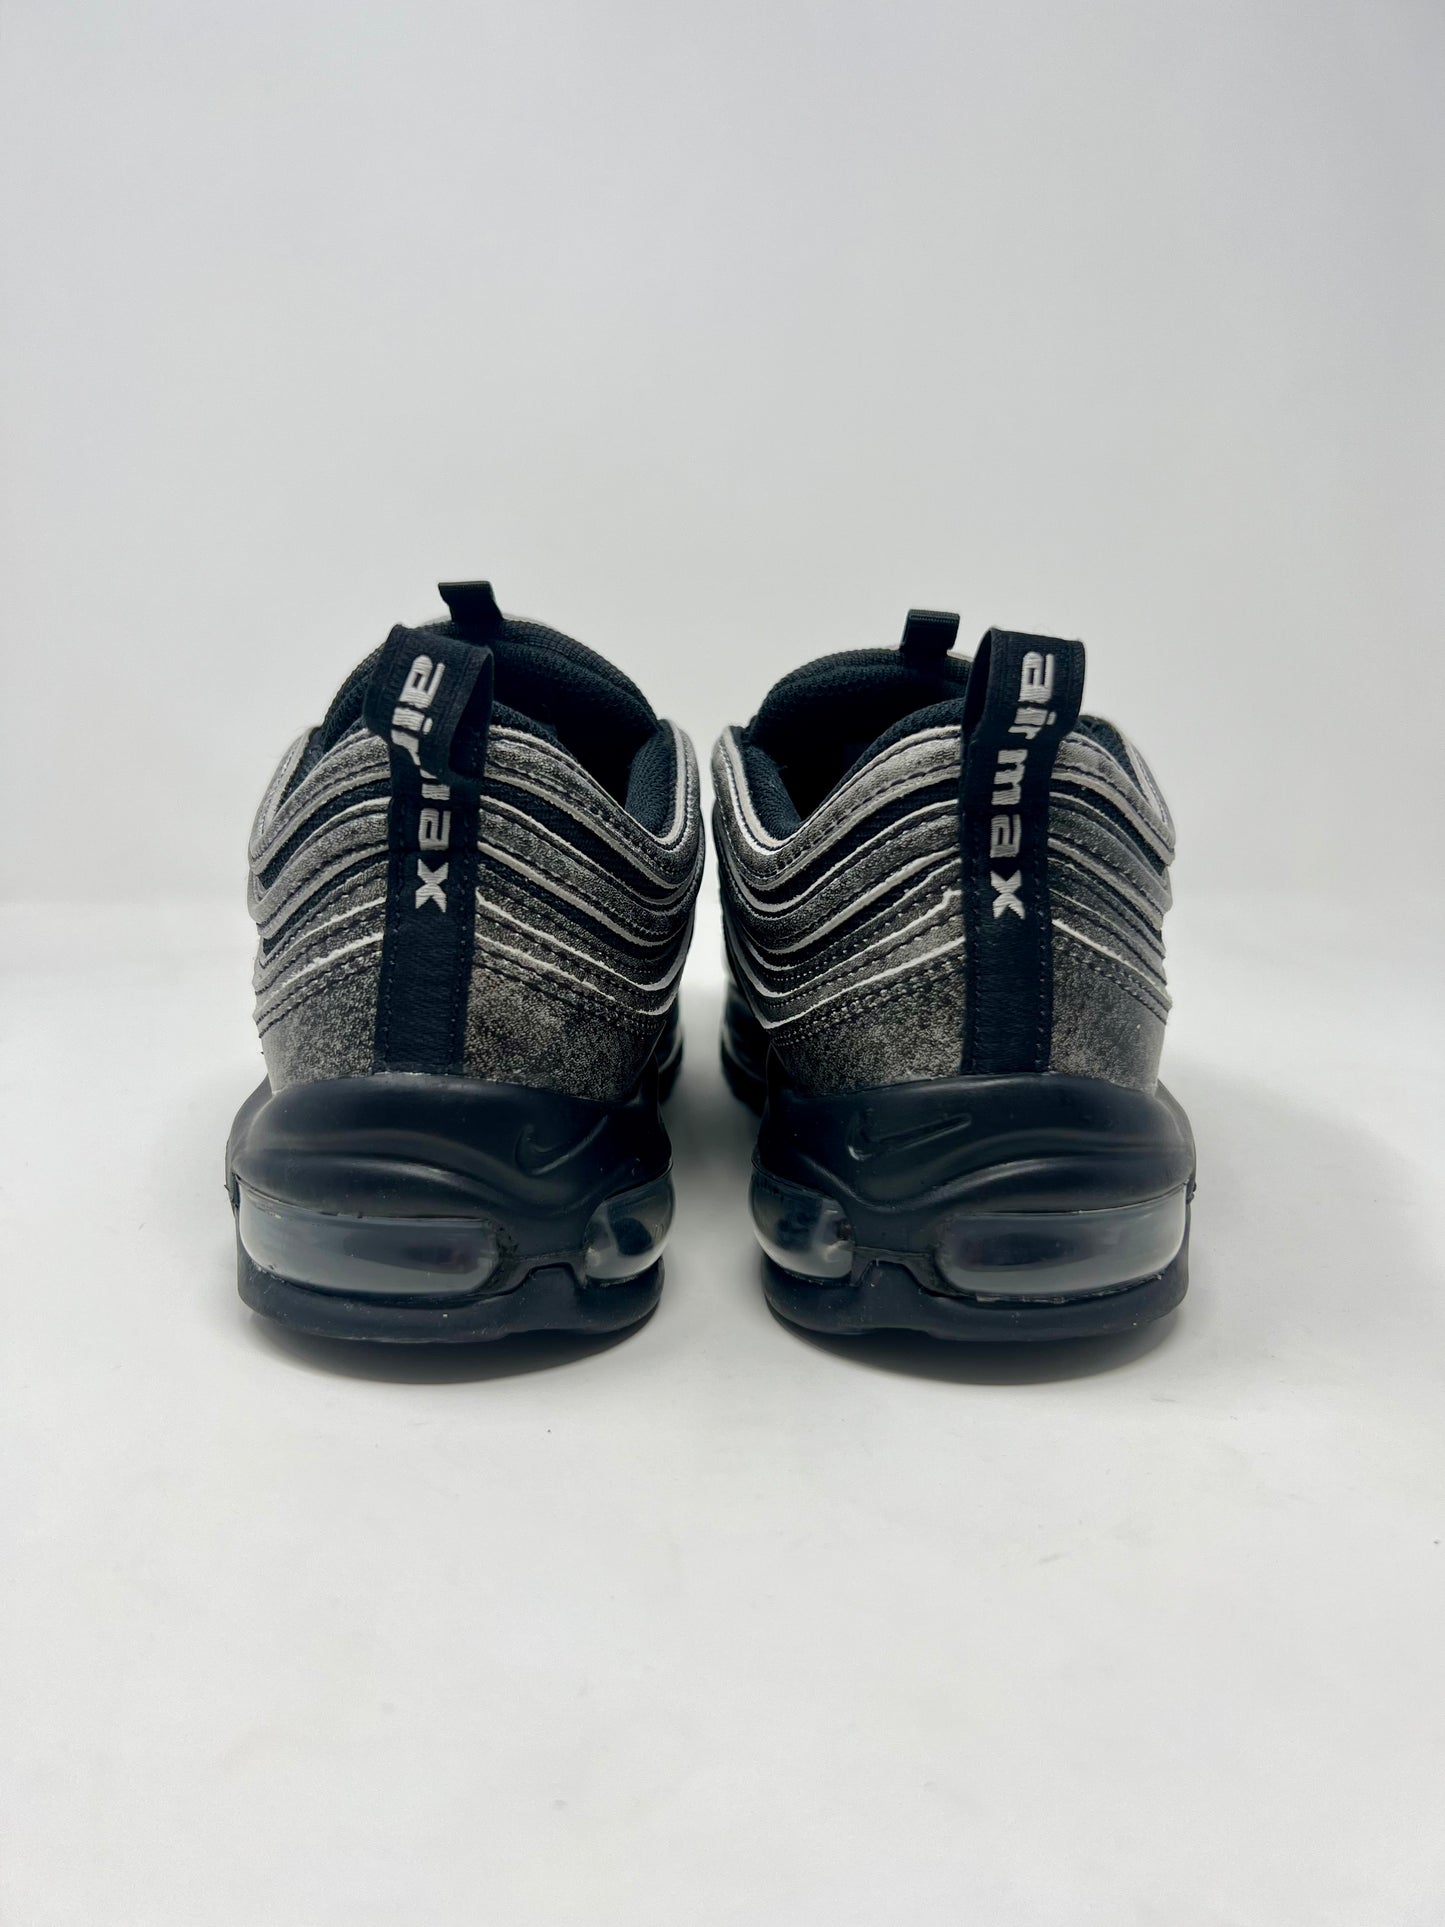 Nike Air Max 97 CDG Black UK8.5